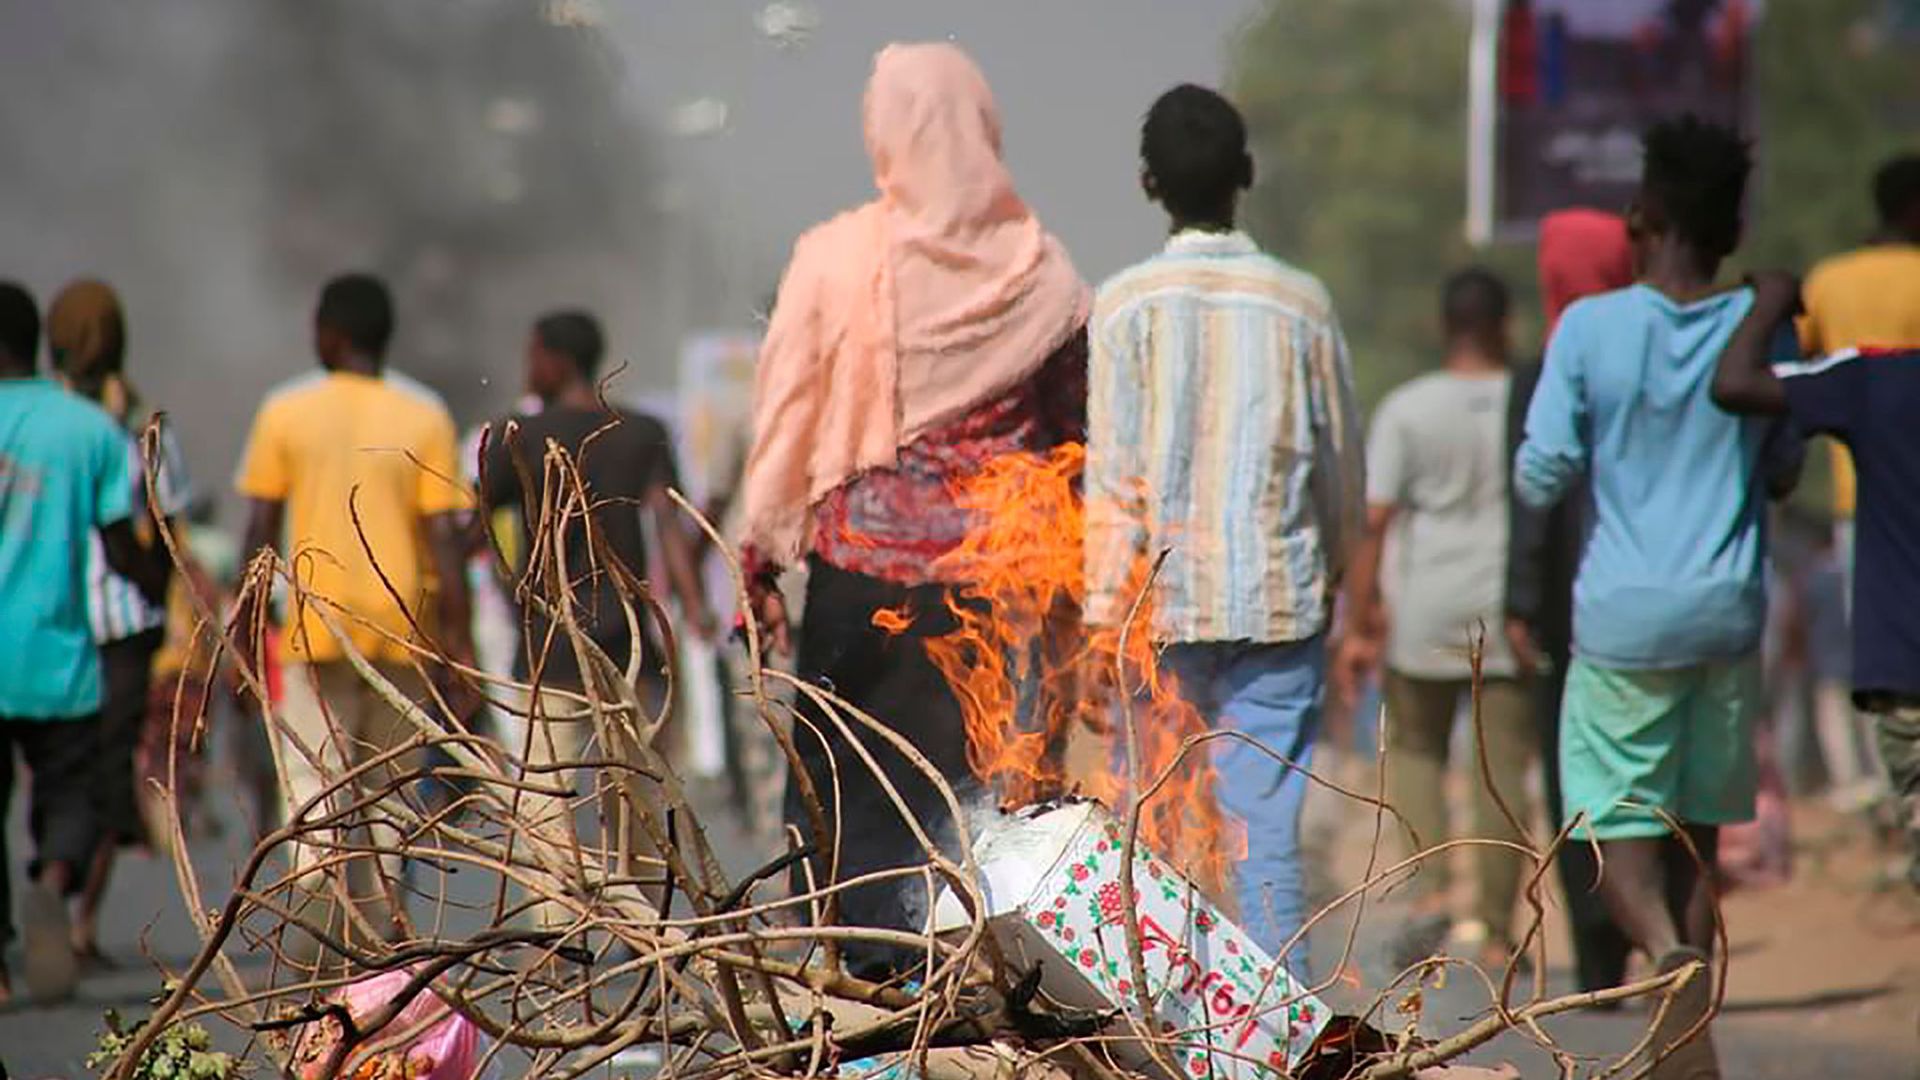 Pro-demokratische Demonstranten in Khartum blockieren mit Feuer die Straßen. Die EU droht den Putschisten in der ostafrikanischen Republik Sudan mit einem Stopp von Entwicklungshilfezahlungen.